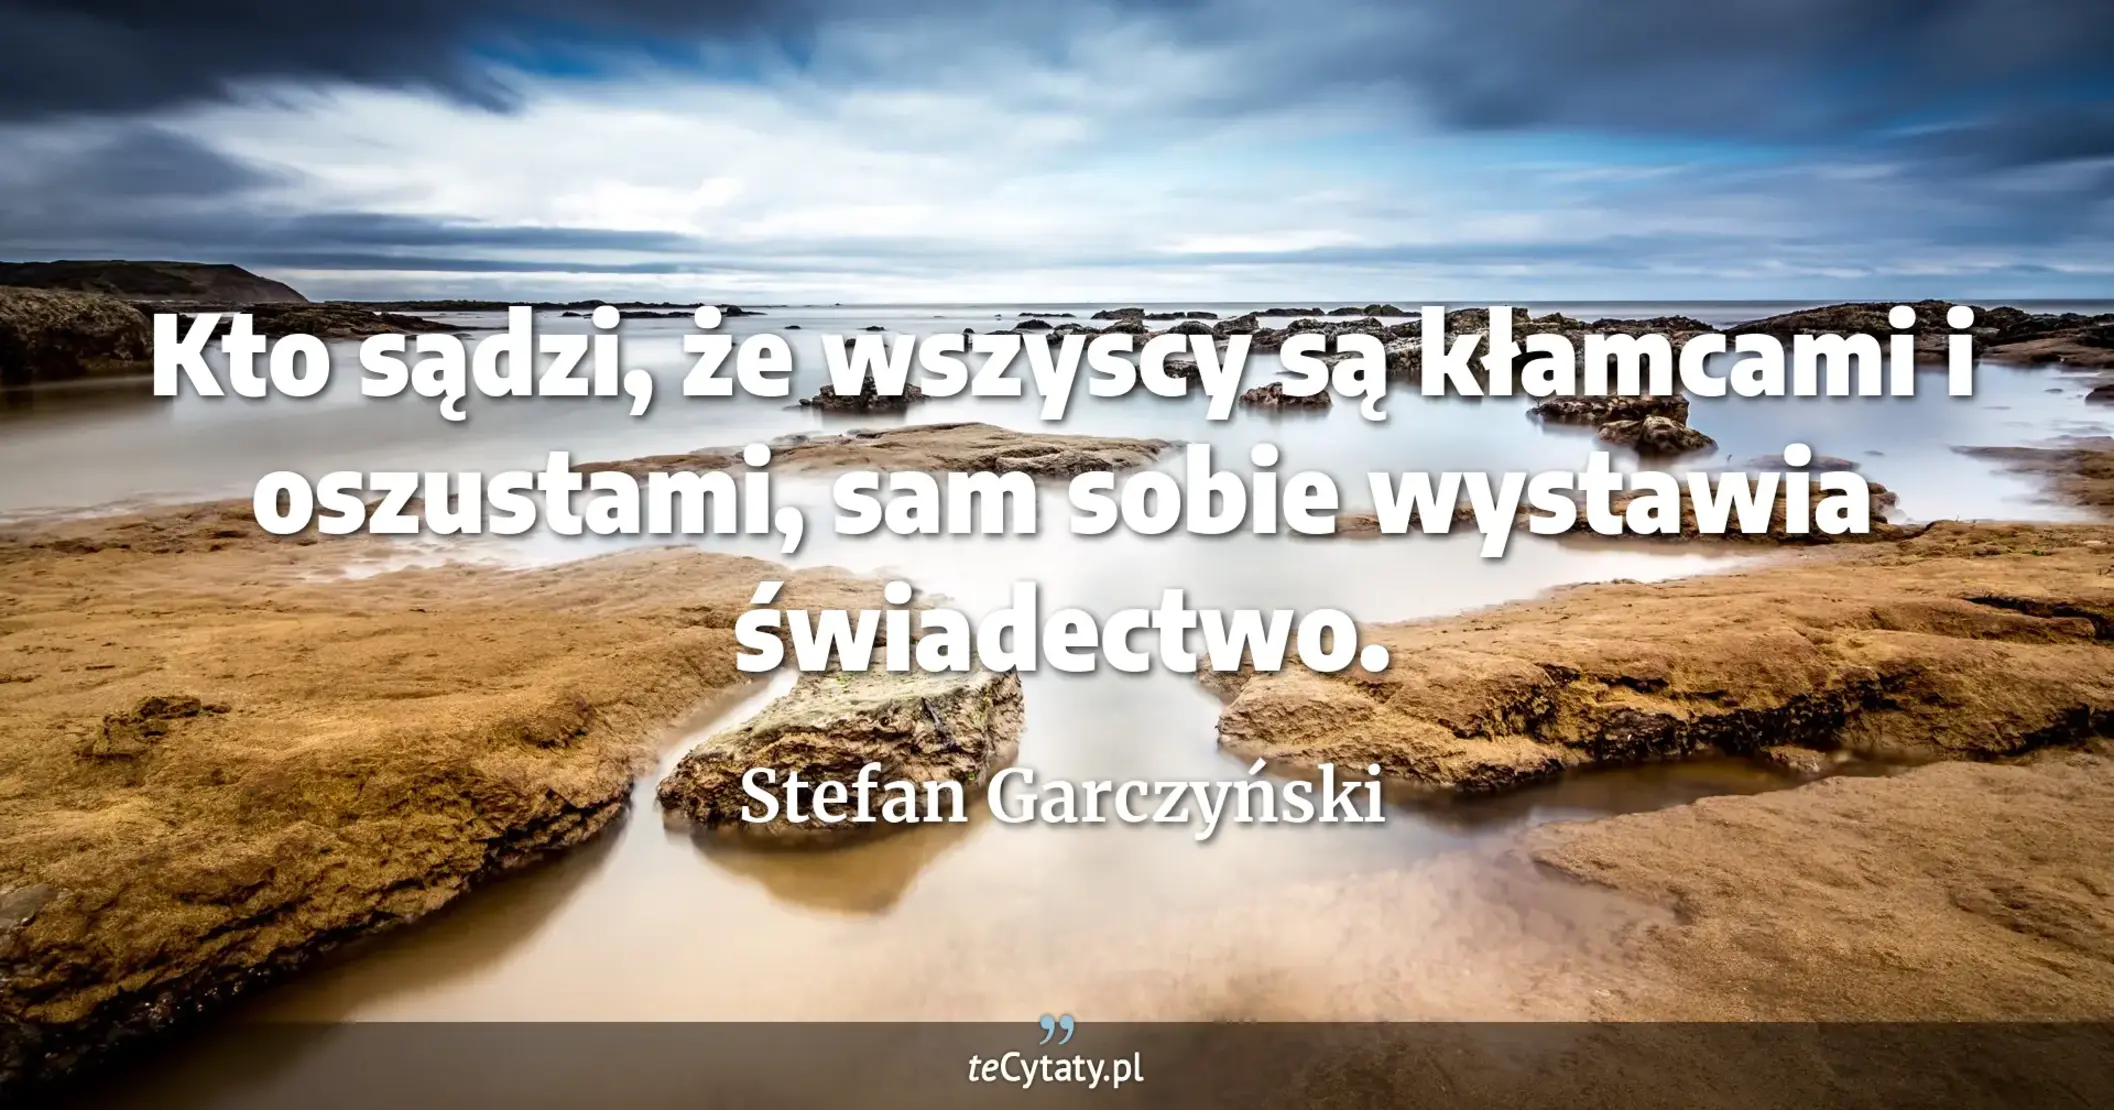 Kto sądzi, że wszyscy są kłamcami i oszustami, sam sobie wystawia świadectwo. - Stefan Garczyński